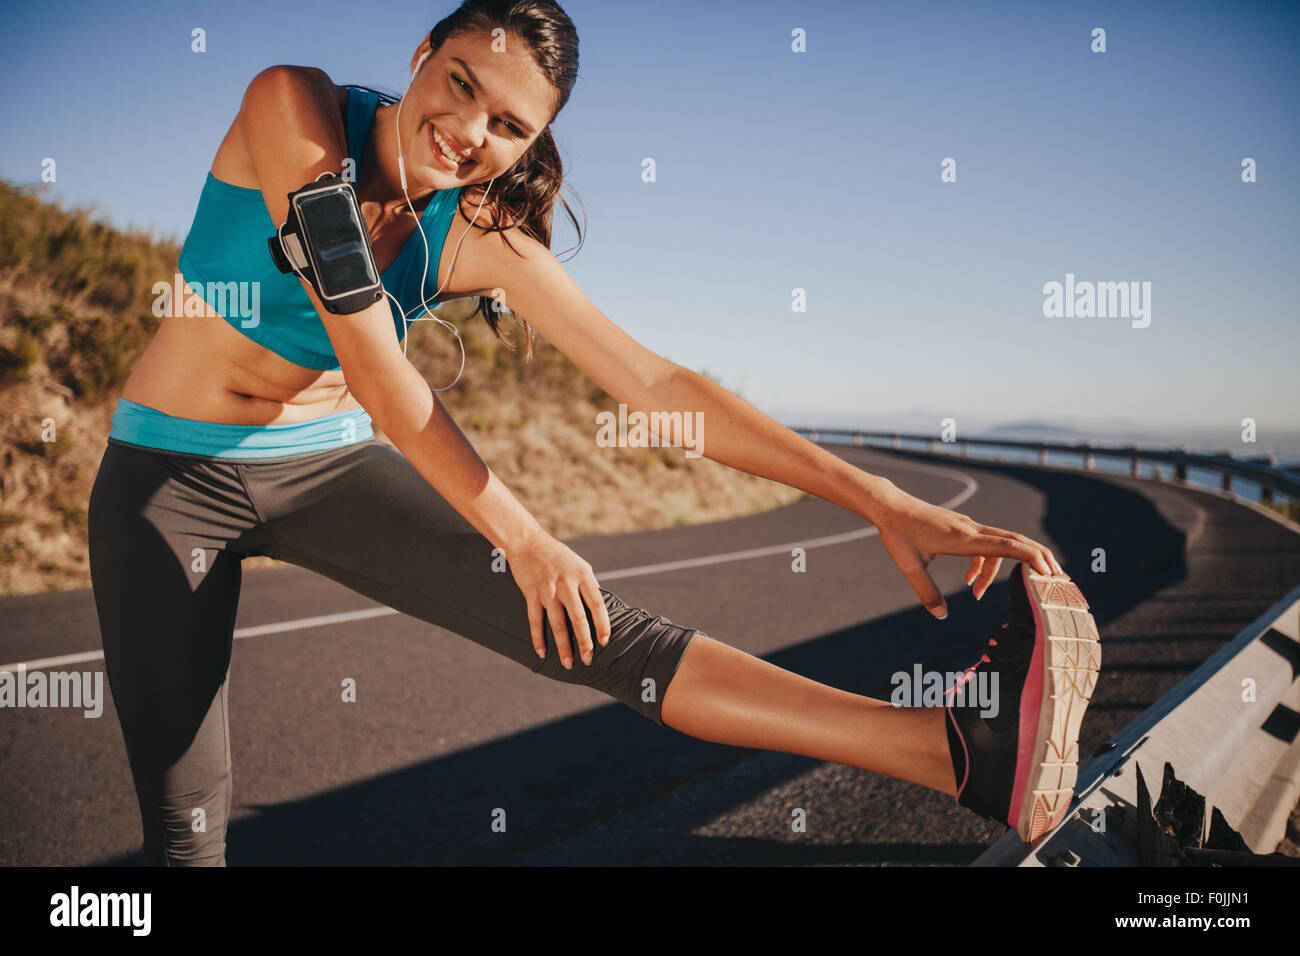 Sportlerin, dehnen ihre Beine im Freien vor der Ausführung. Passen Sie junge Frau für einen Run auf Landstraße Aufwärmen. Stockfoto